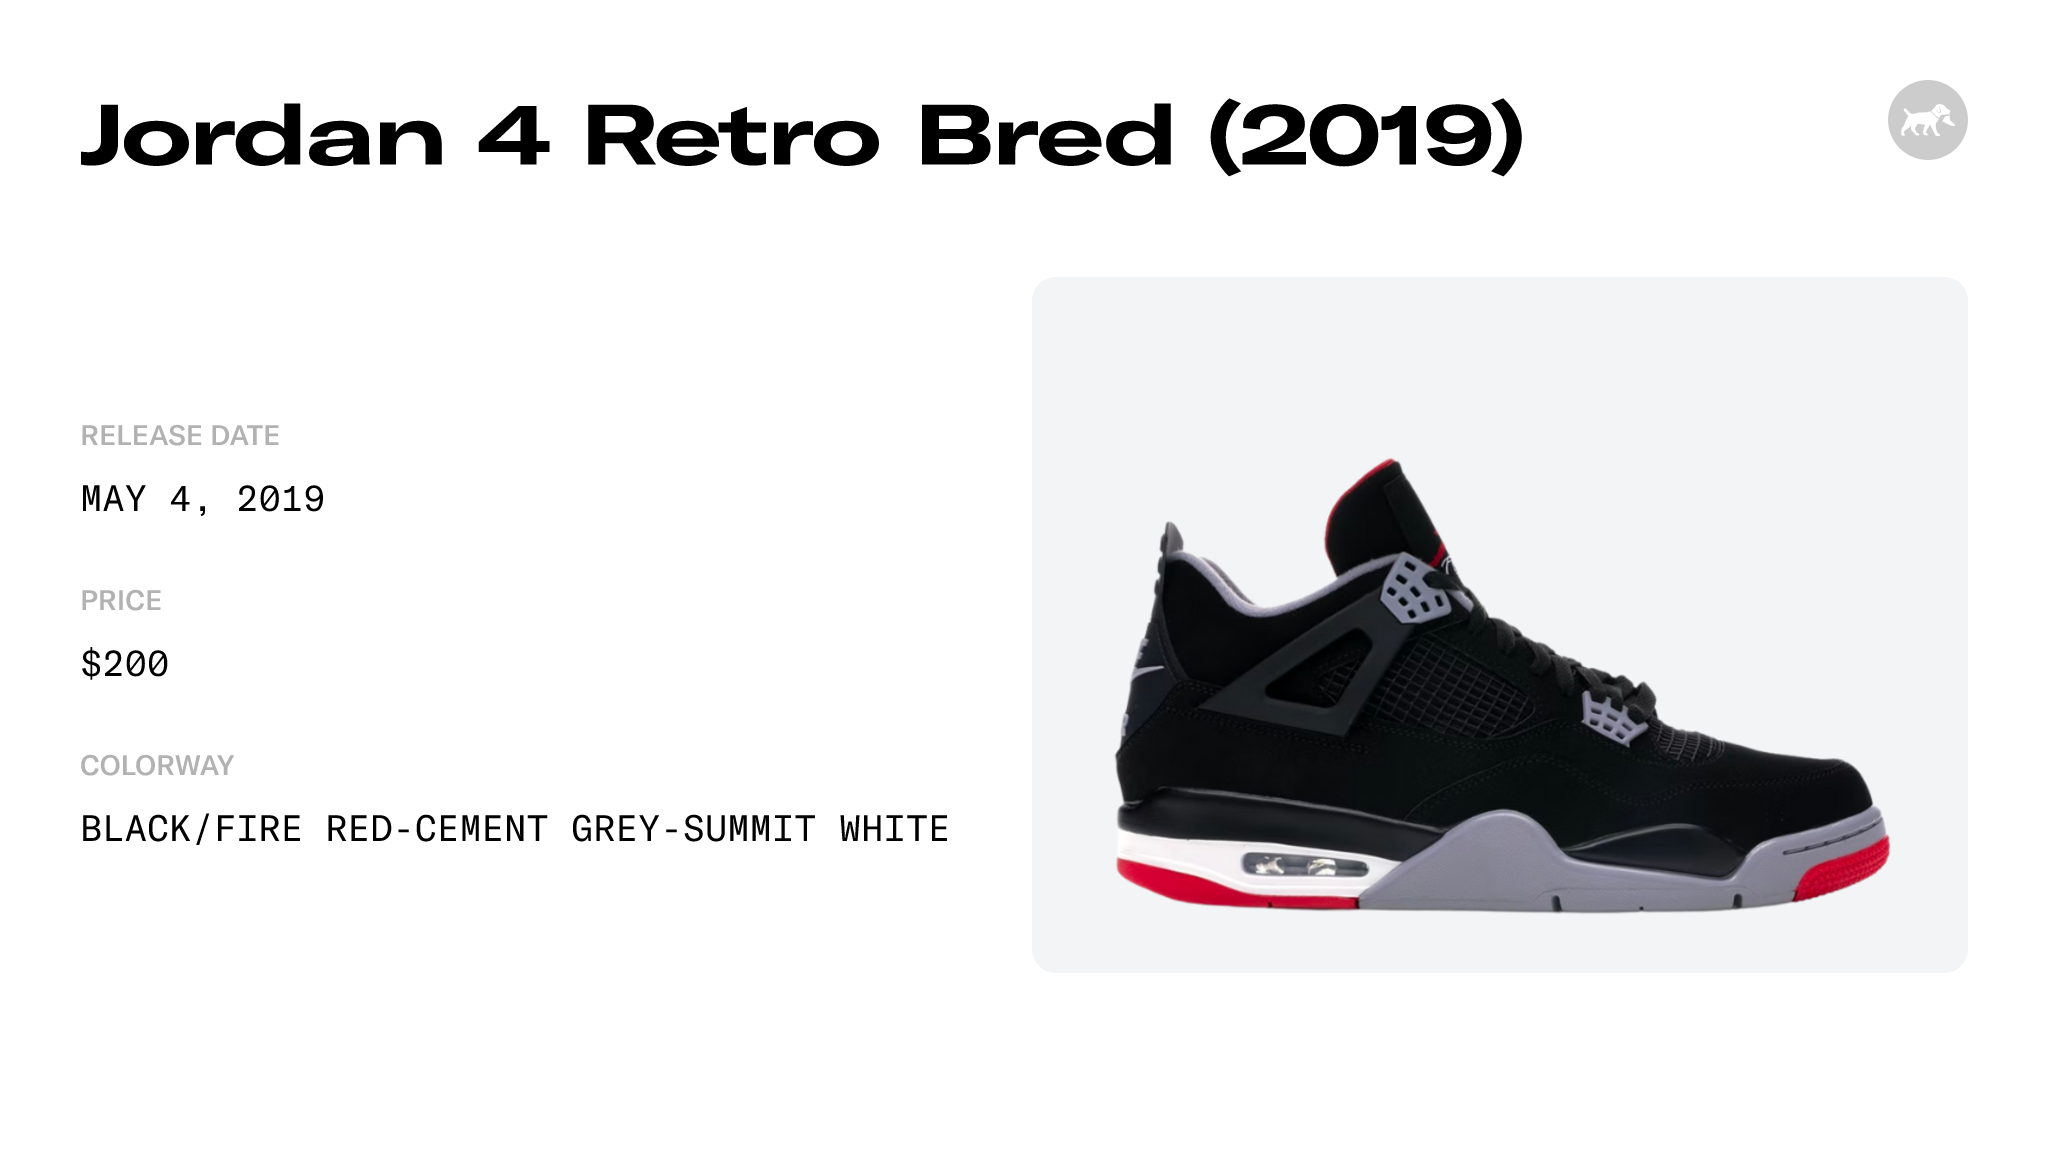 NEW Nike Air Jordan 4 Retro OG Bred Black Red Shoes (2019) 308497-060